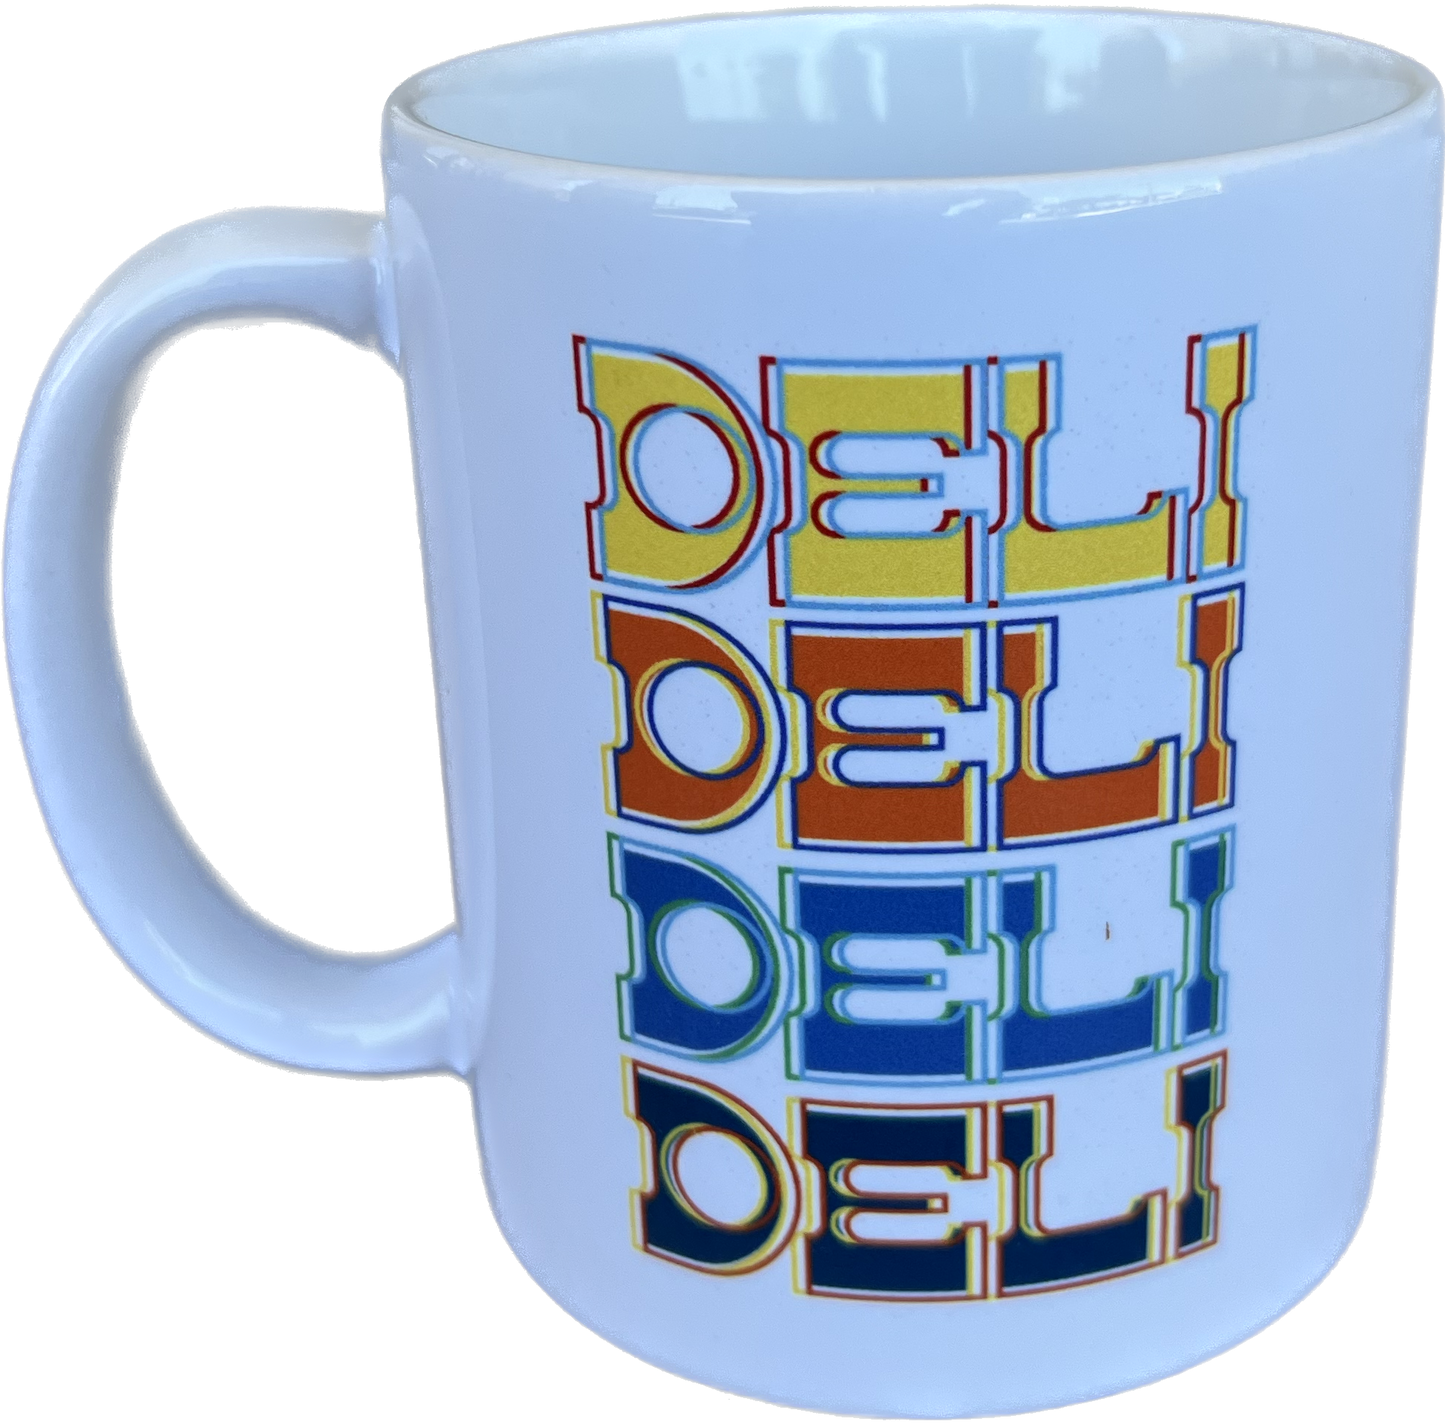 DELI - Western Coffee Mug